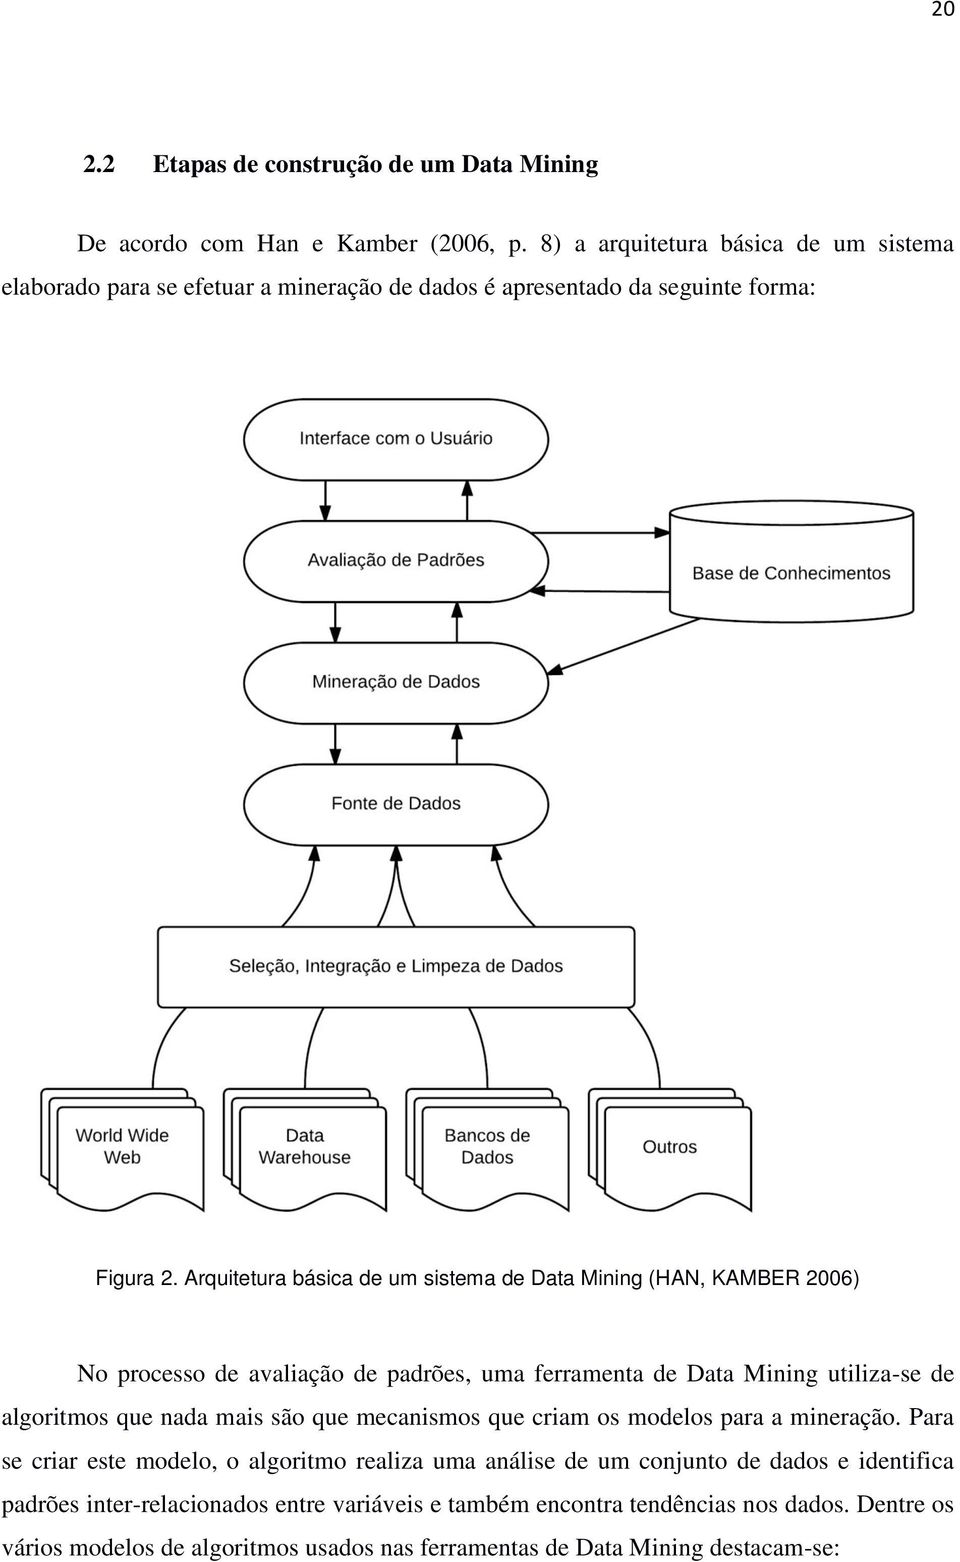 Arquitetura básica de um sistema de Data Mining (HAN, KAMBER 2006) No processo de avaliação de padrões, uma ferramenta de Data Mining utiliza-se de algoritmos que nada mais são